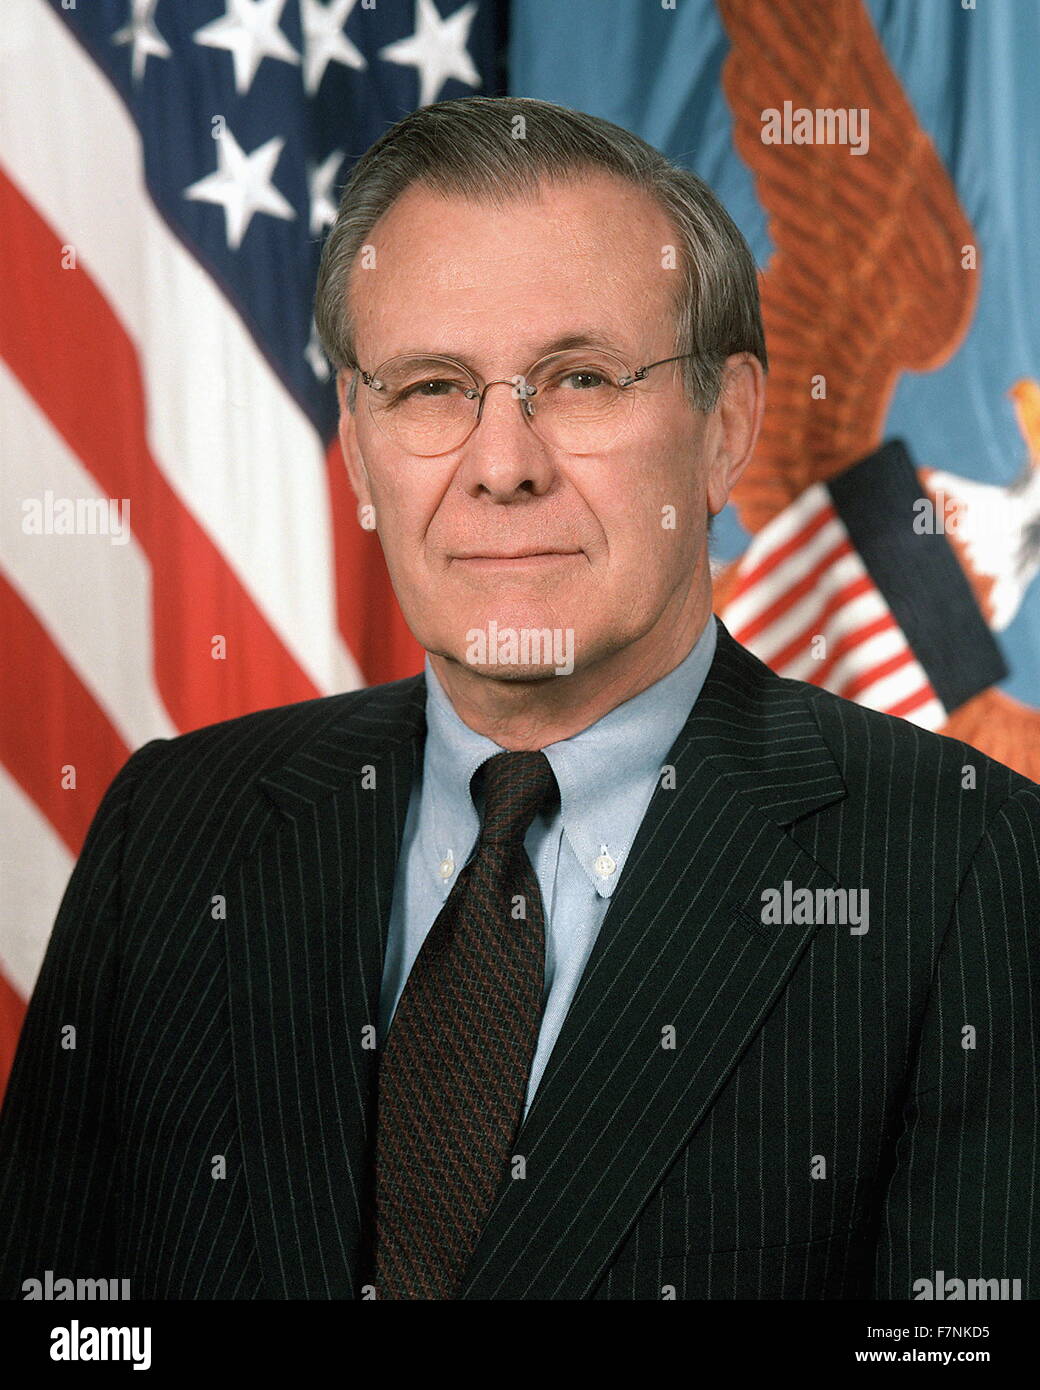 Donald Rumsfeld (geb. 9. Juli 1932), US-amerikanischer Politiker und Geschäftsmann. Verteidigungsminister von 1975 bis 1977 und 2001 bis 2006 unter Präsident George W. Bush. Vereinigte Staaten Kongreßabgeordnetes von Illinois (1962 – 1969), Berater des Präsidenten (1969 – 1973), die Vereinigten Staaten ständiger Vertreter bei der NATO (1973 – 1974) und White House Chief Of Staff (1974 – 1975). Stockfoto